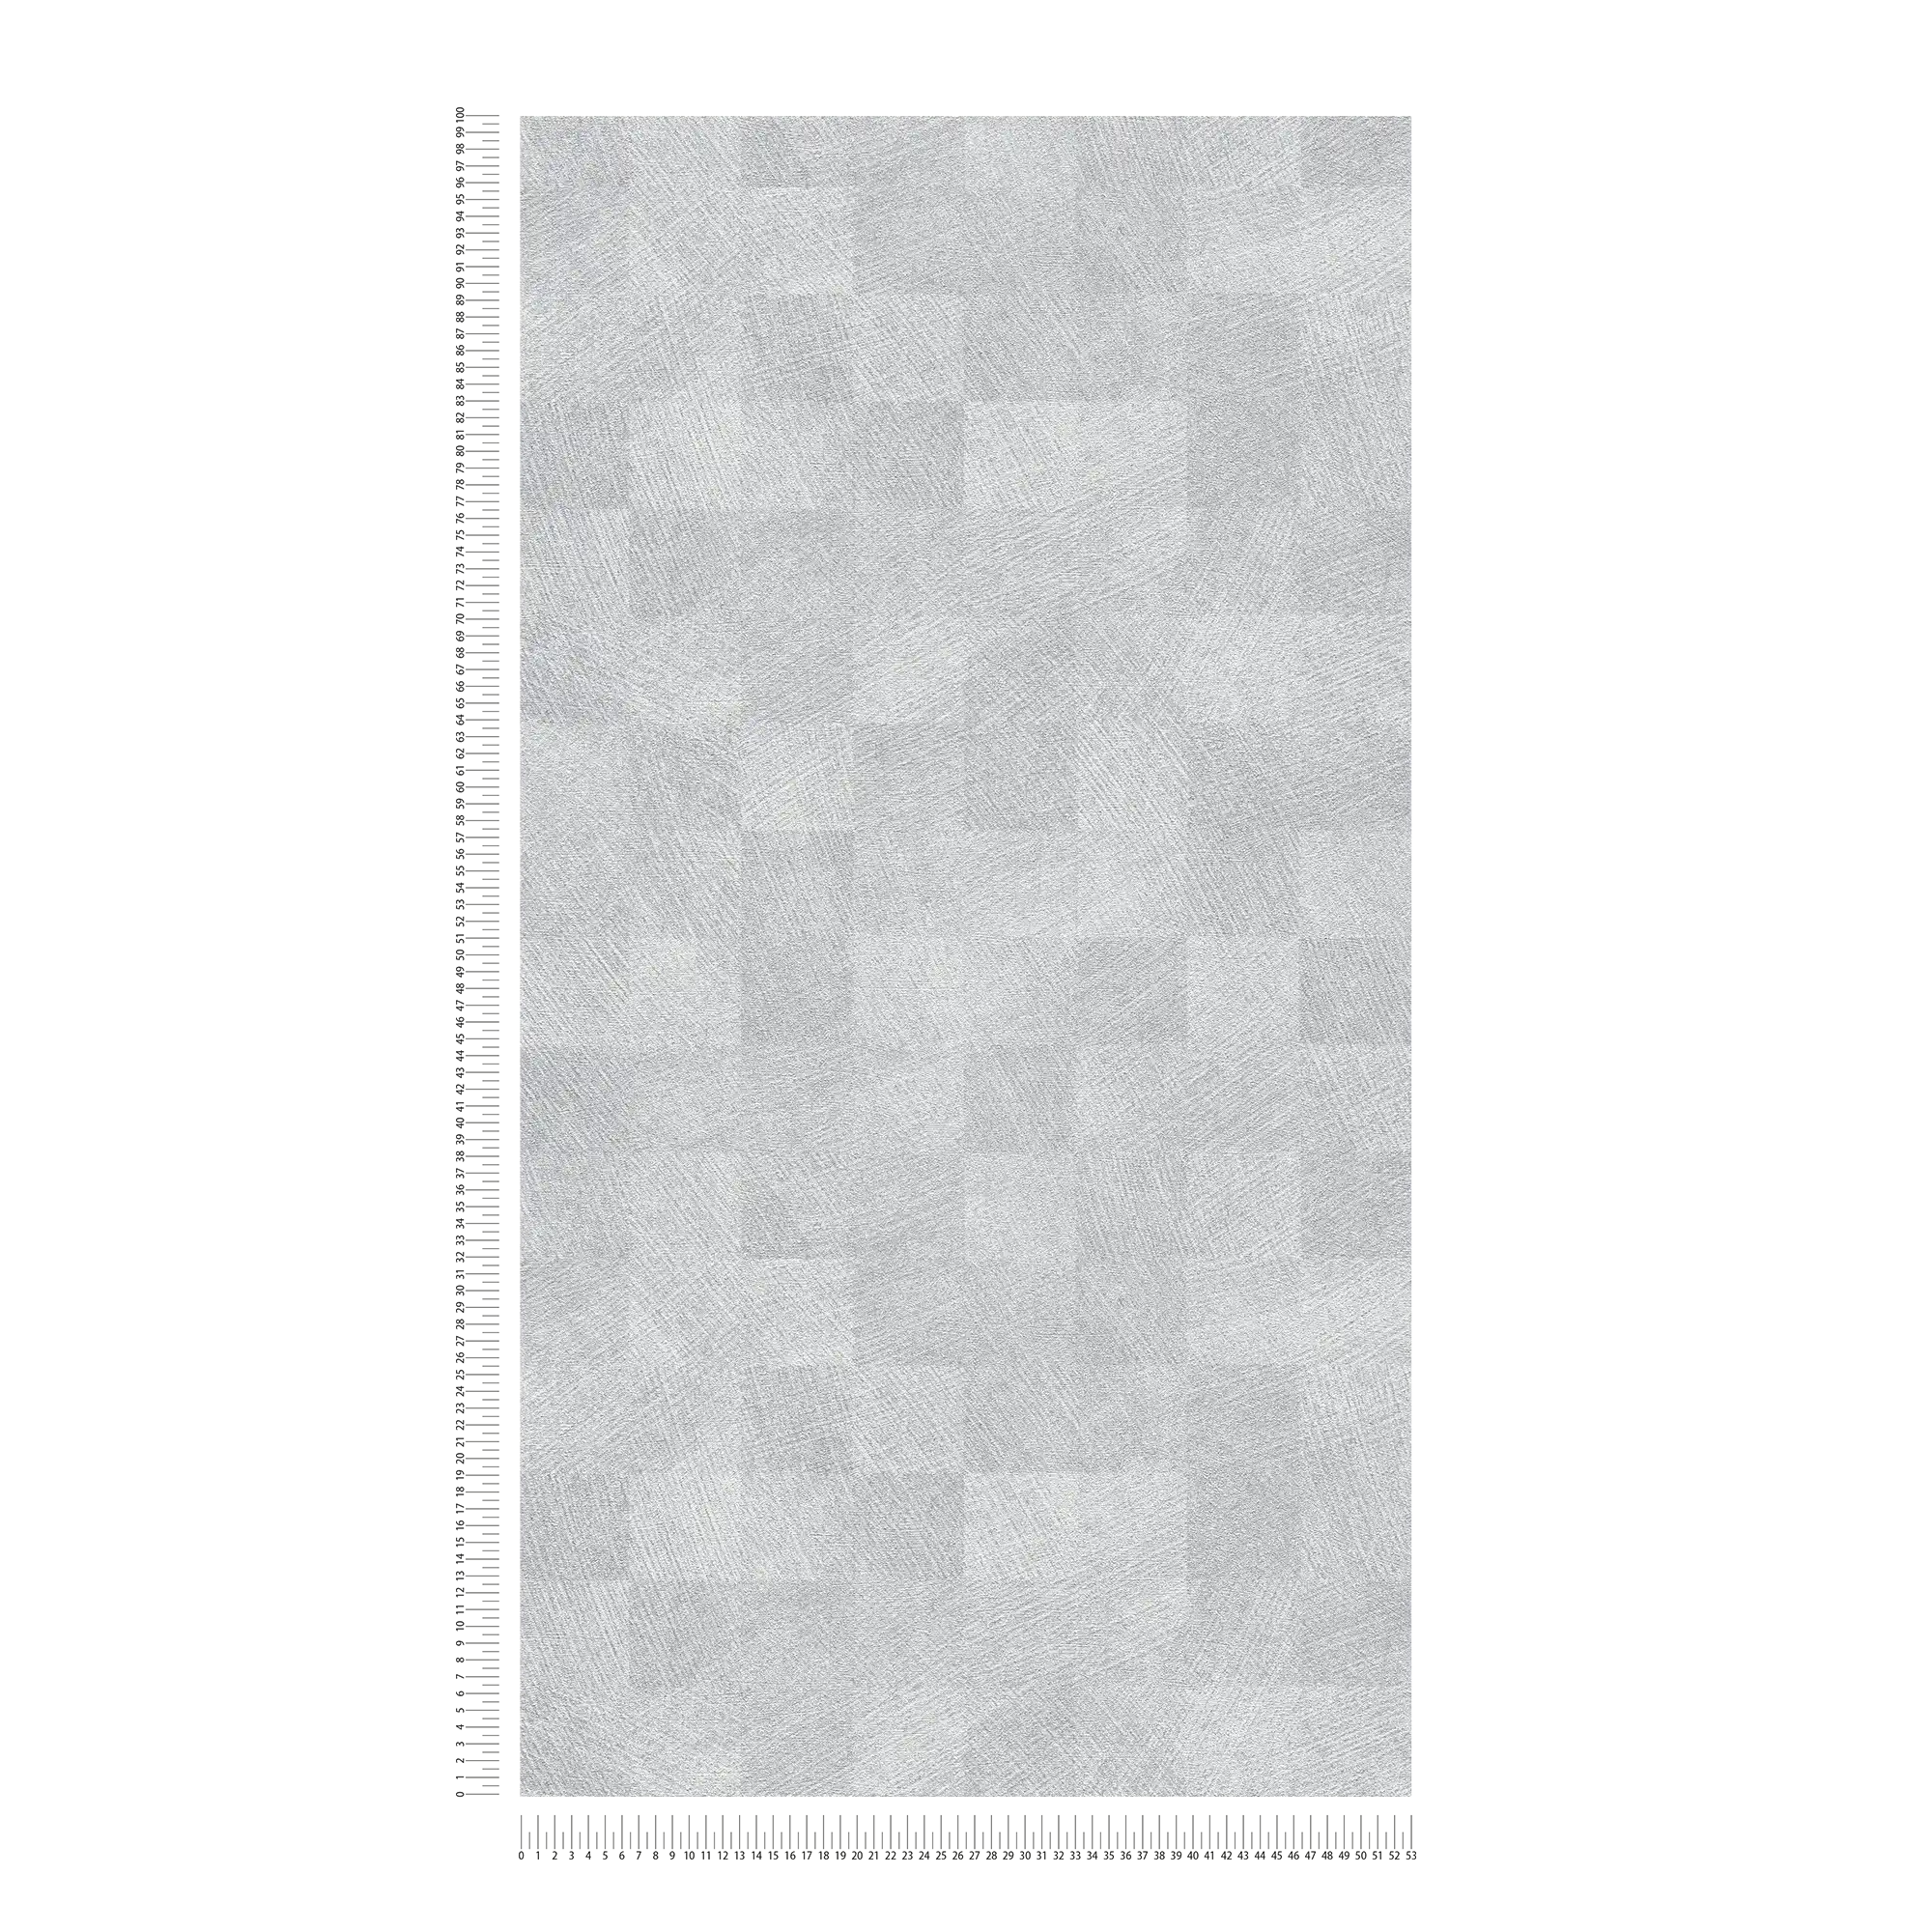             Metallic behang ruitjespatroon met glanseffect - grijs
        